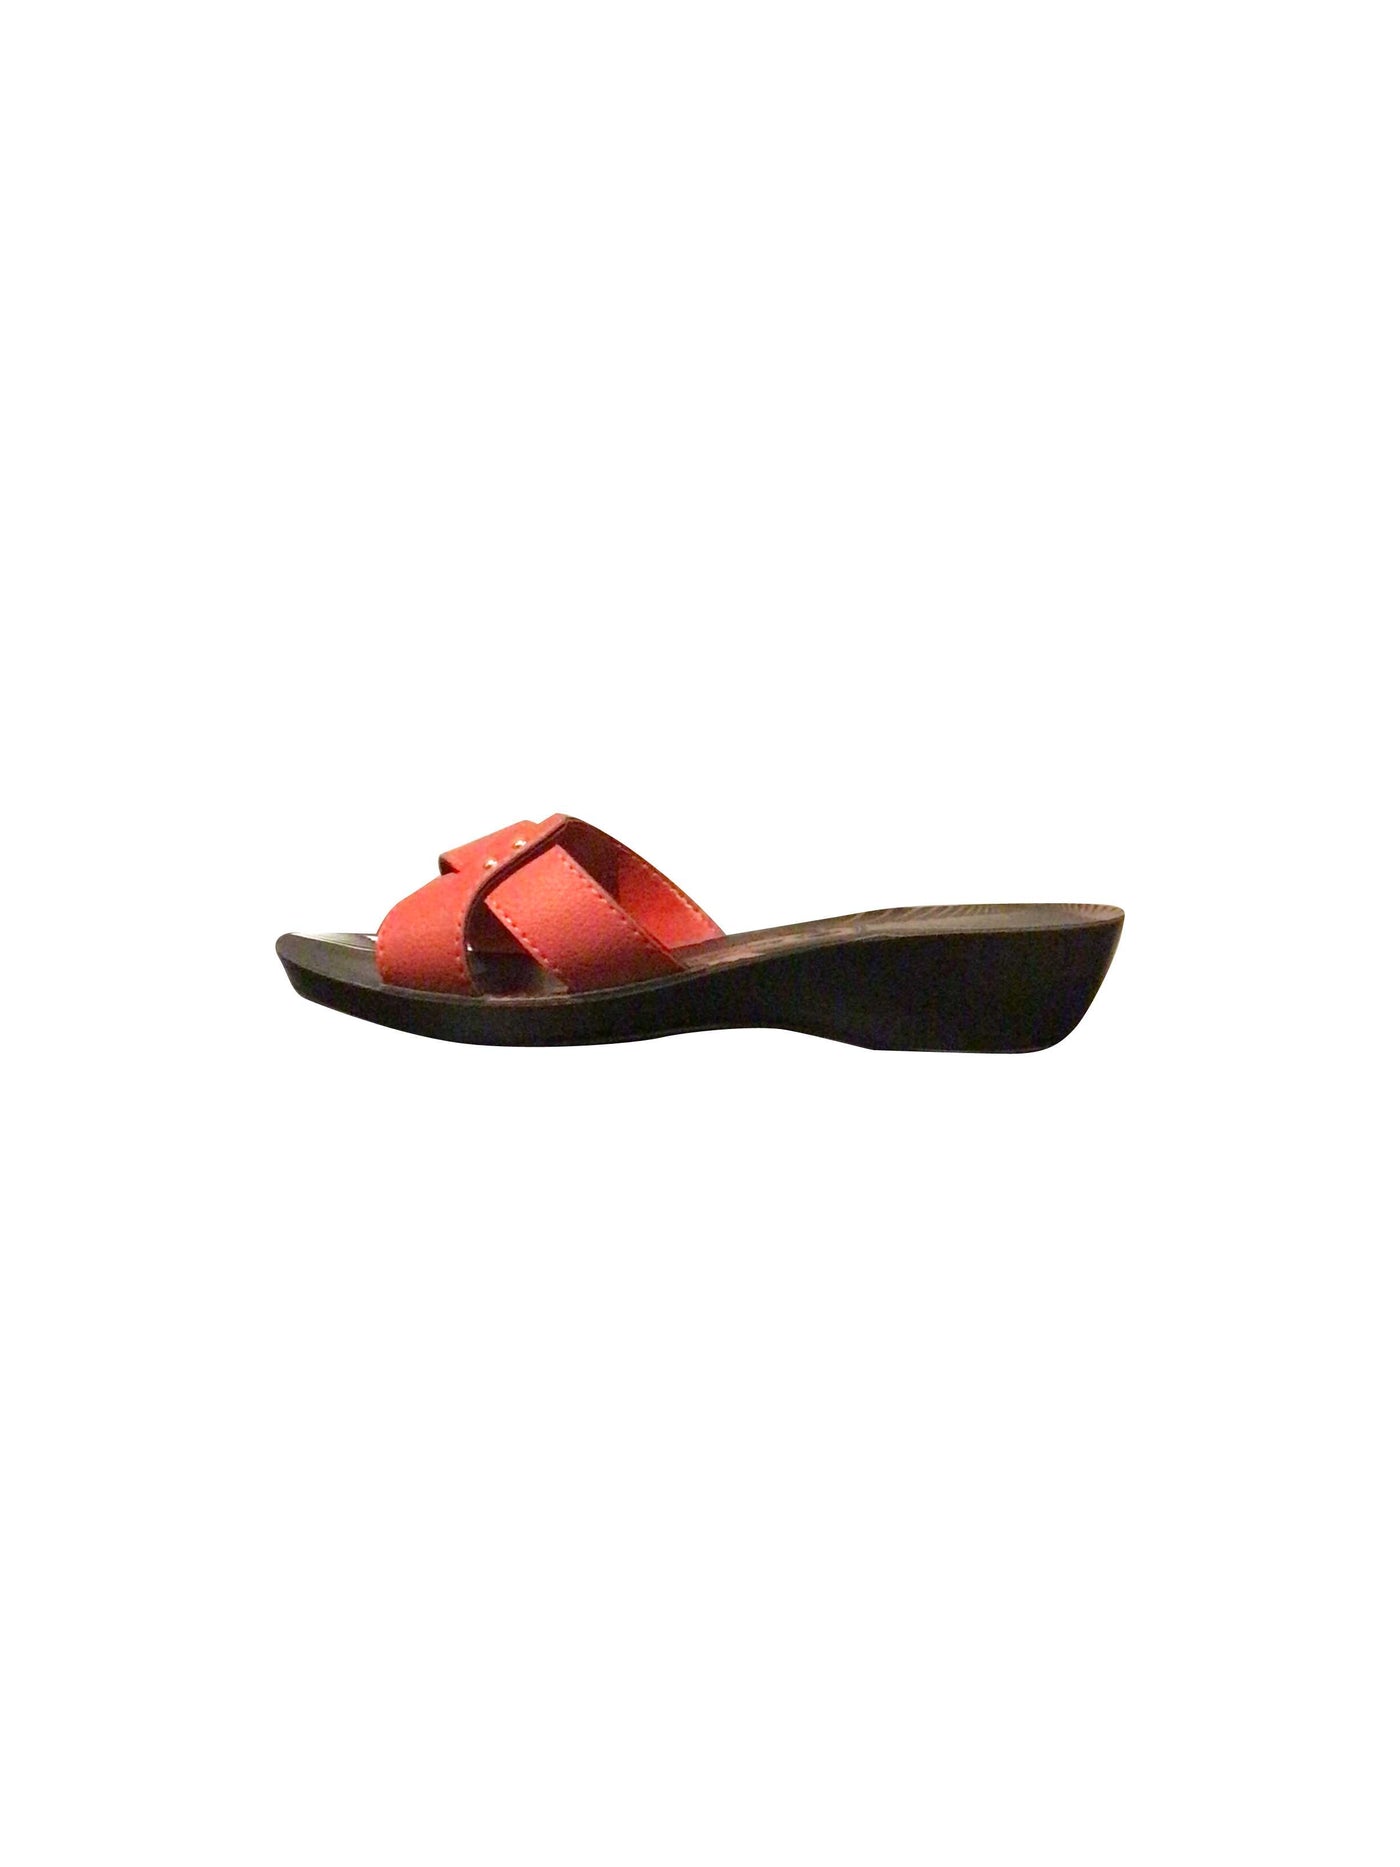 AEROWALK Sandals in Red  -  38  15.50 Koop